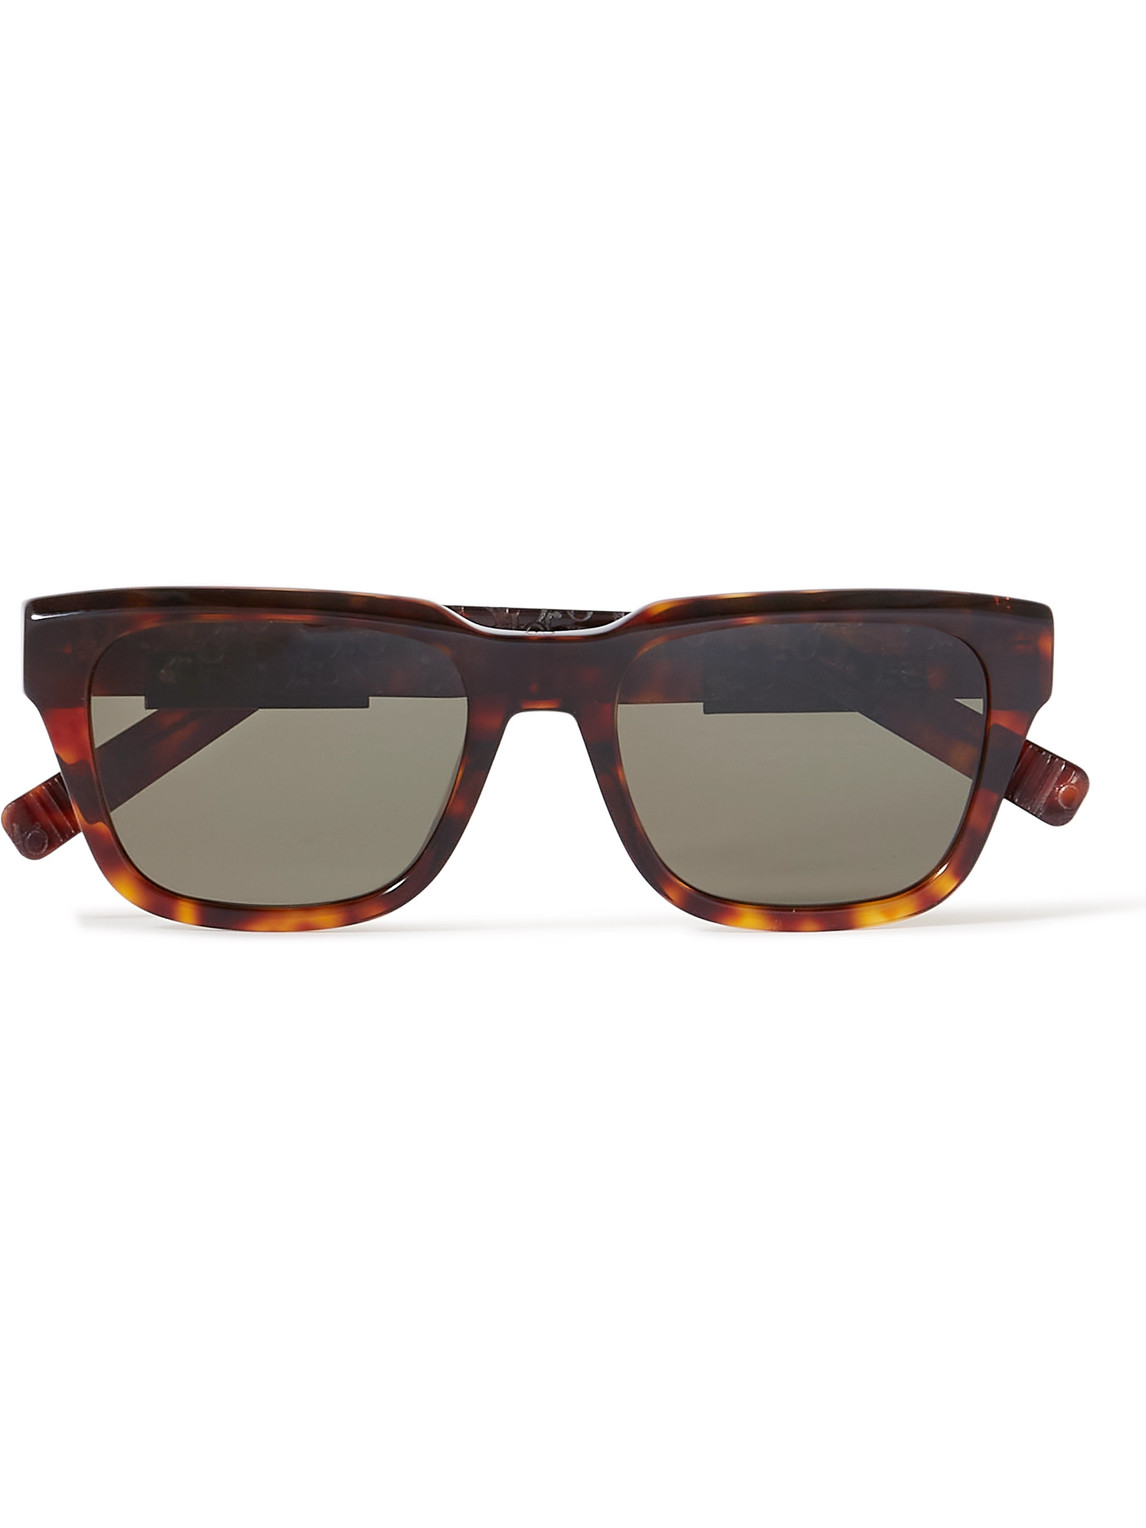 Dior B23 S1i Square-frame Tortoiseshell Acetate Sunglasses